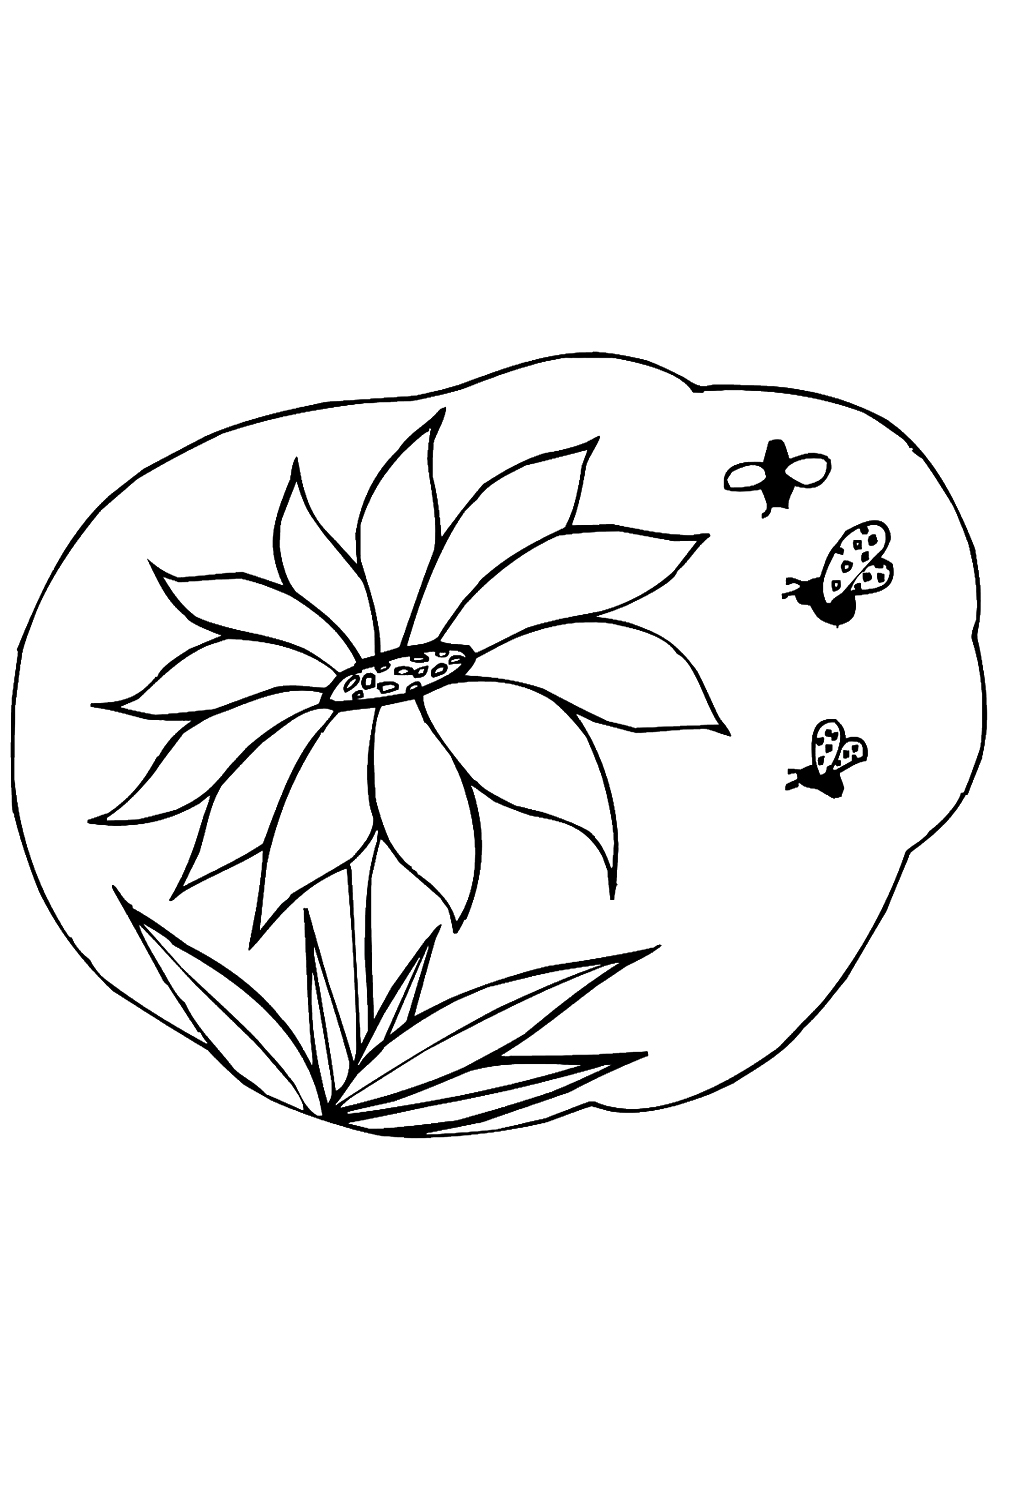 Abelhas coletam néctar de girassol de girassol